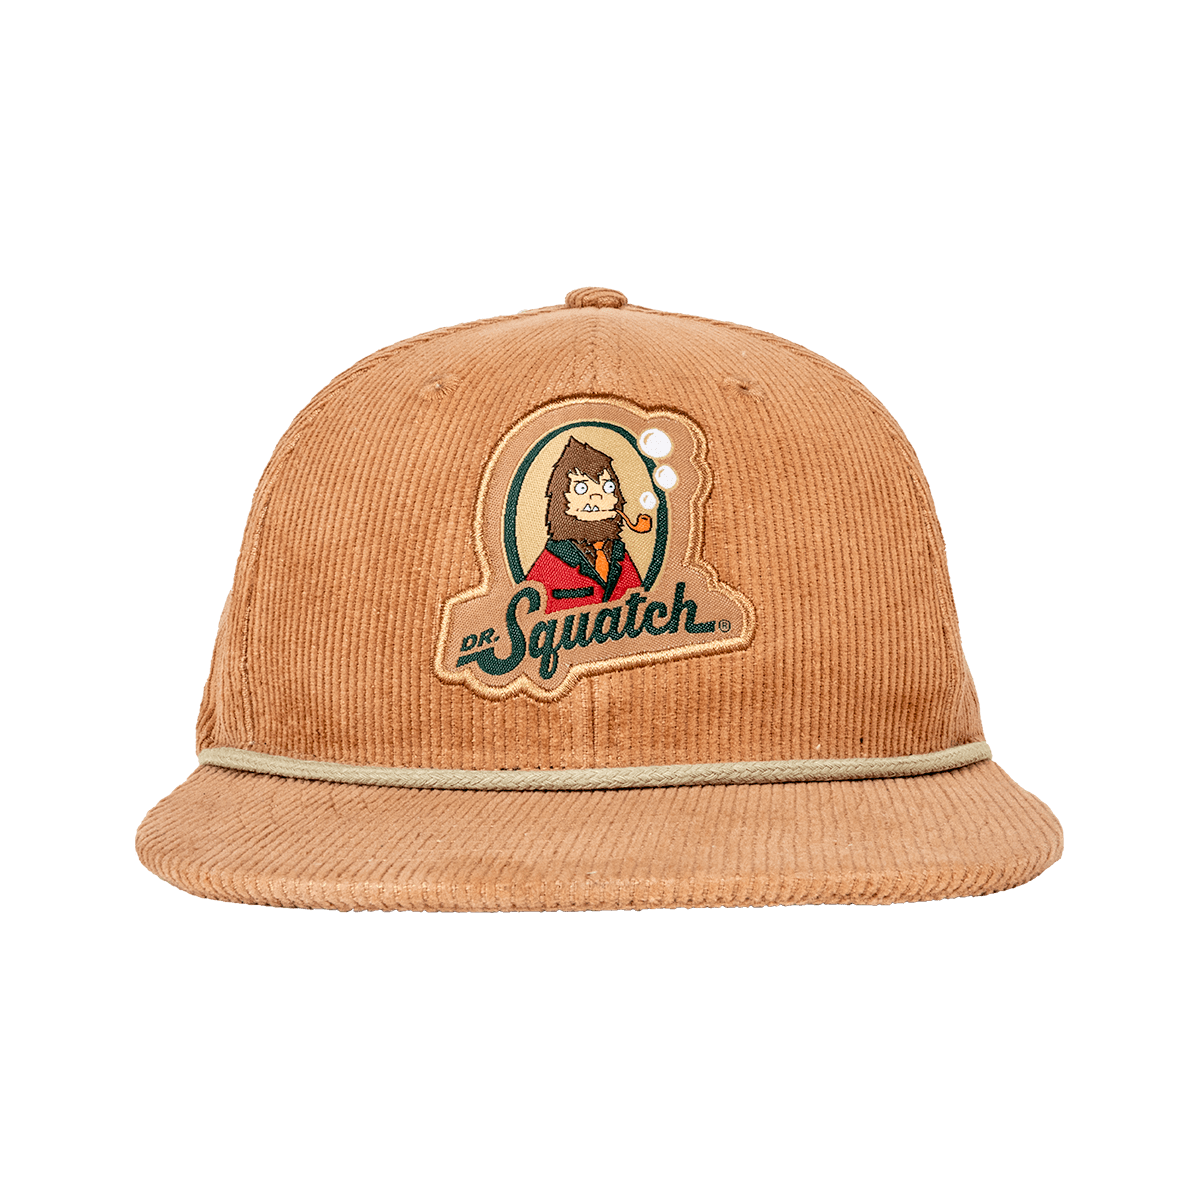 Corduroy Hat (Brown) - 1 Unit